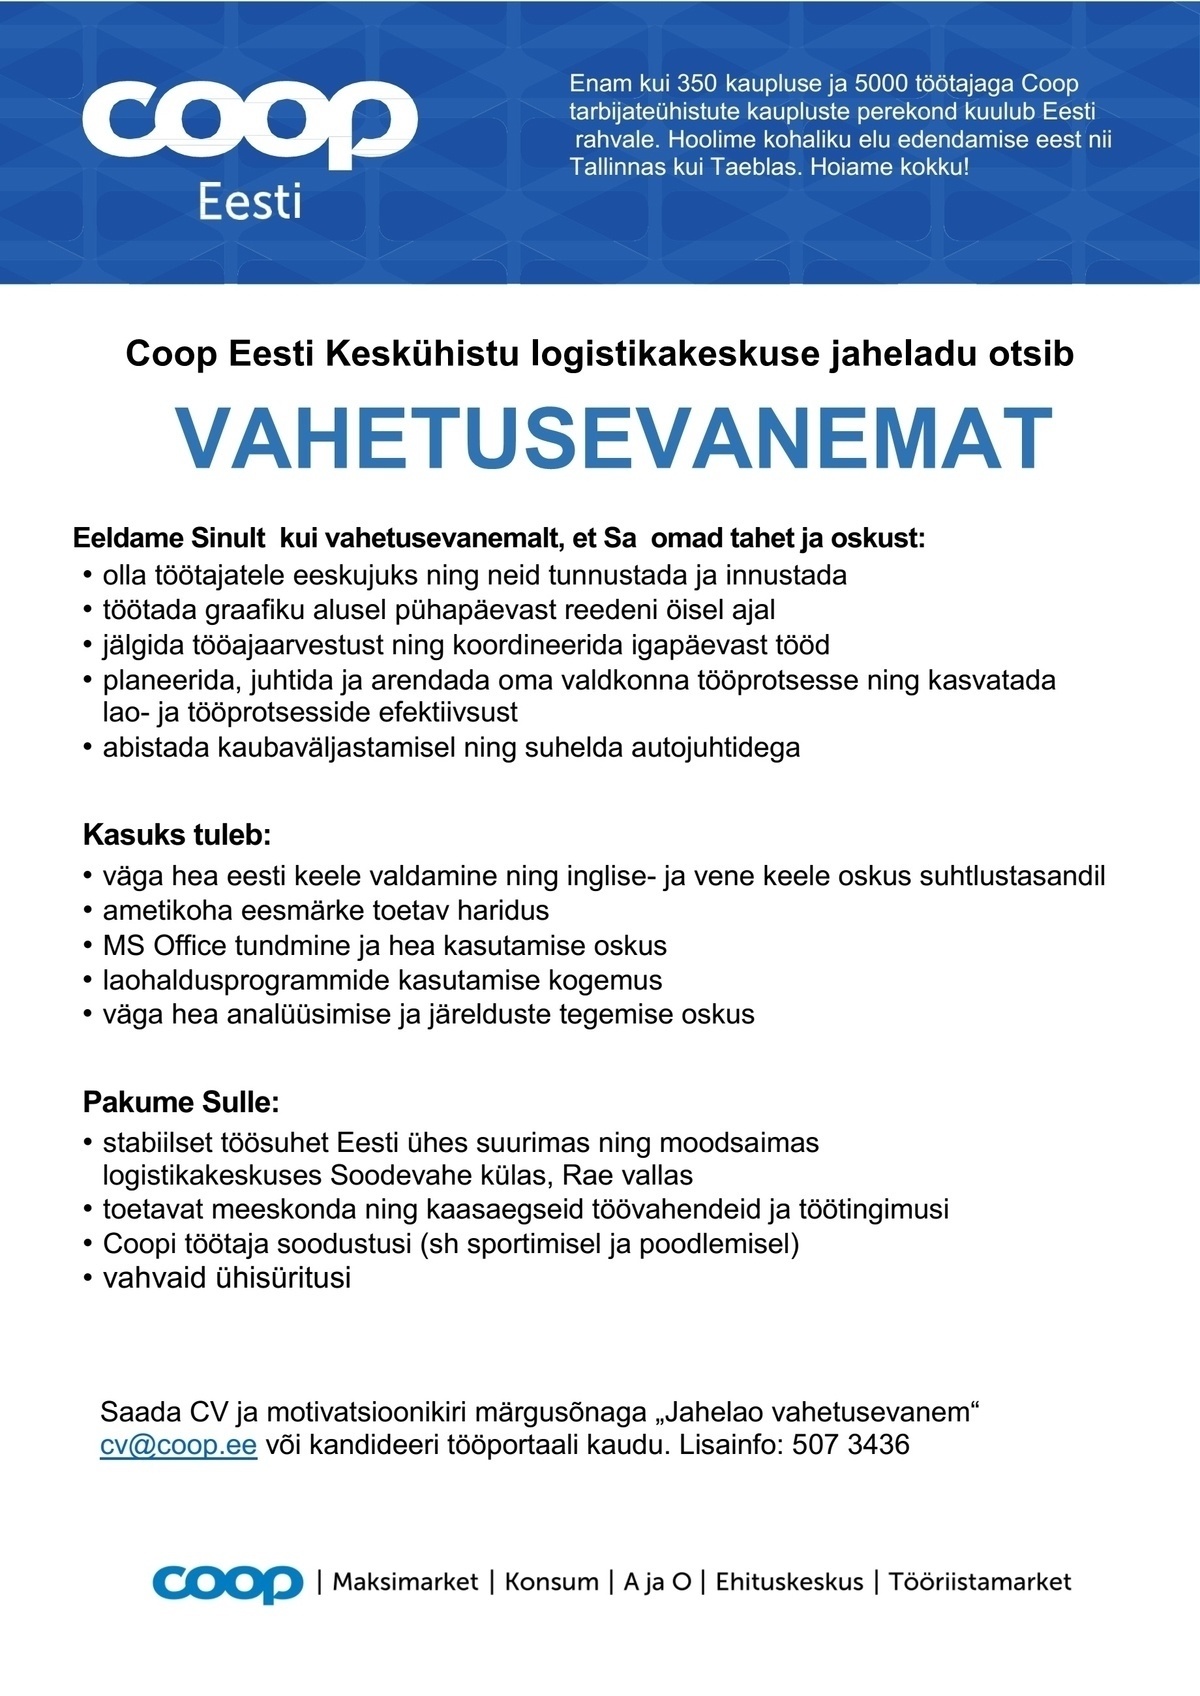 Coop Eesti Keskühistu Vahetusevanem (jaheladu)